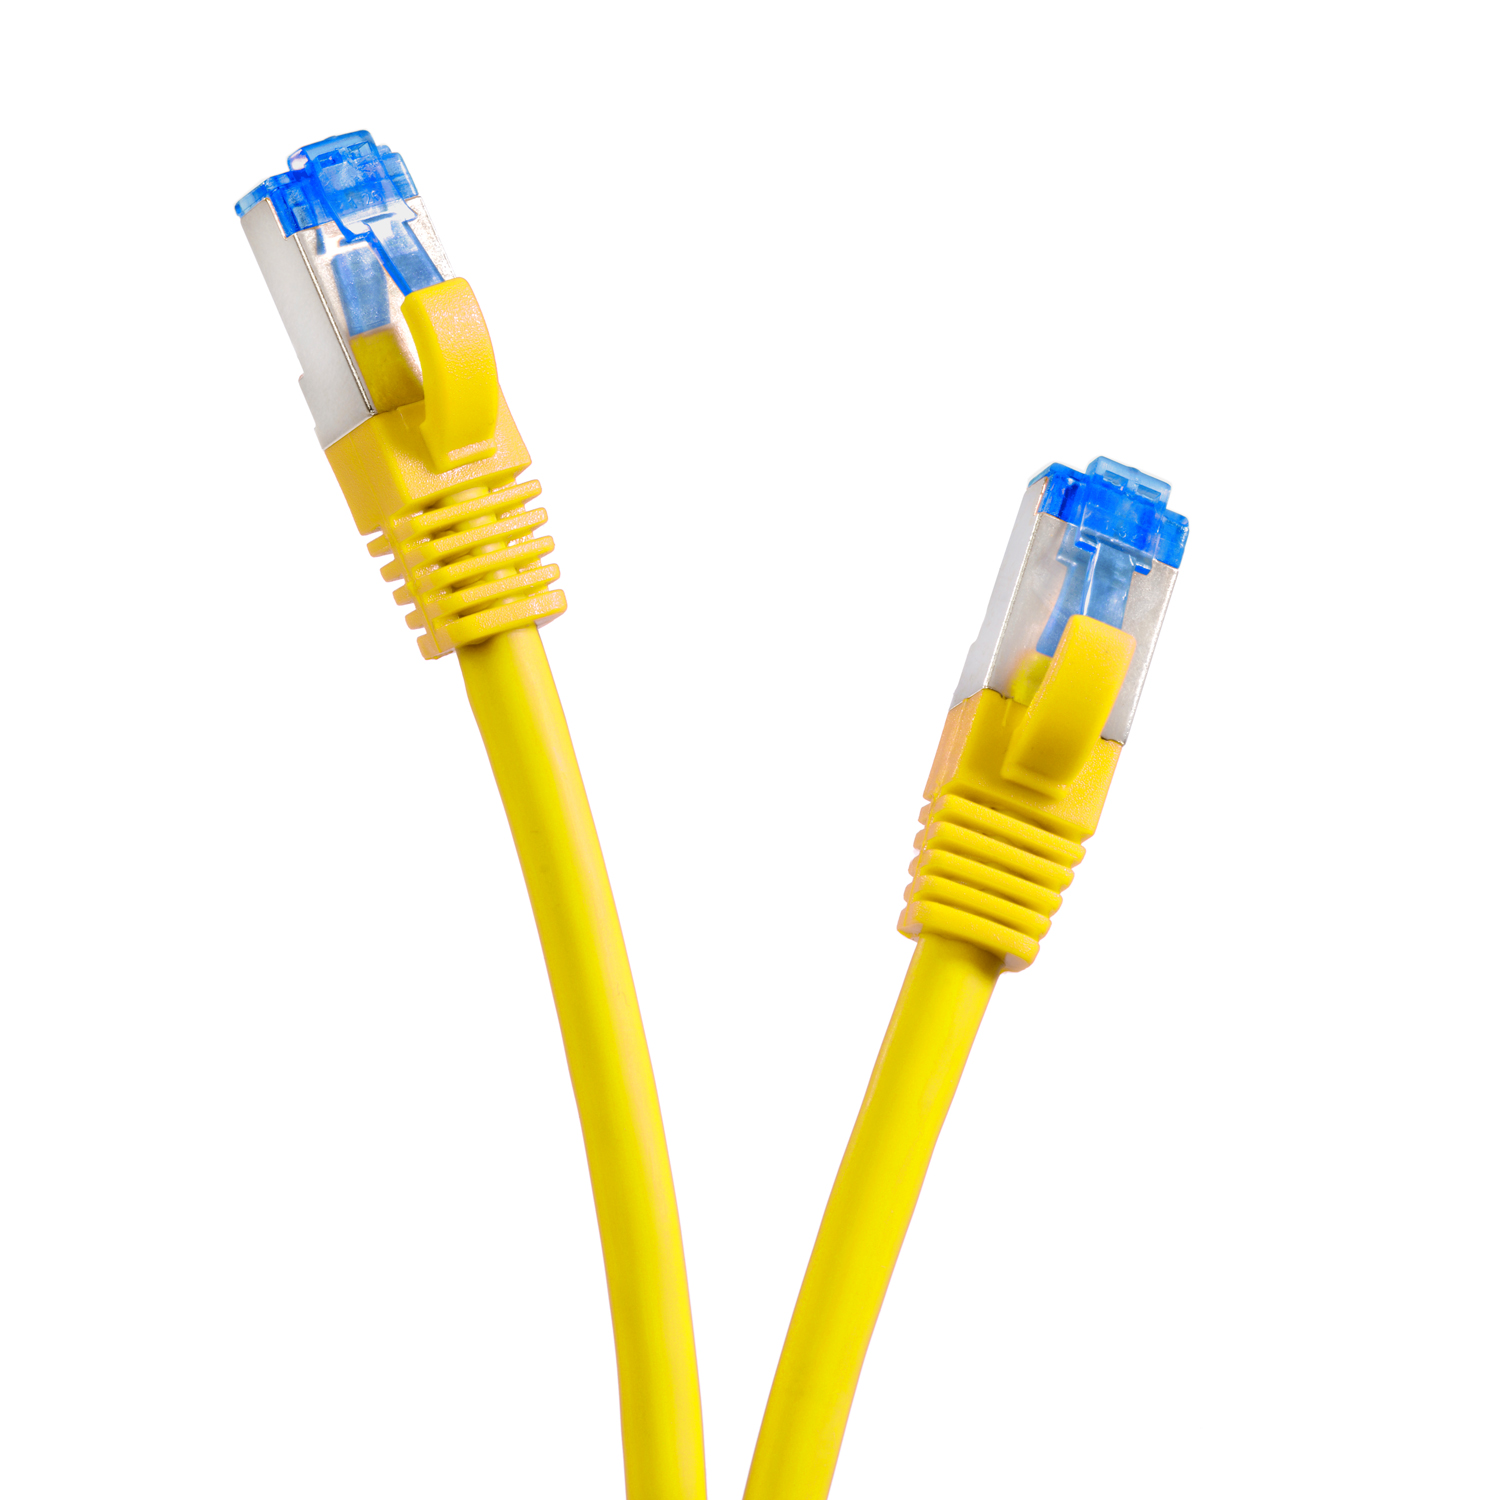 gelb, m Netzwerkkabel, 20m 20 TPFNET 10GBit, S/FTP / Netzwerkkabel Patchkabel